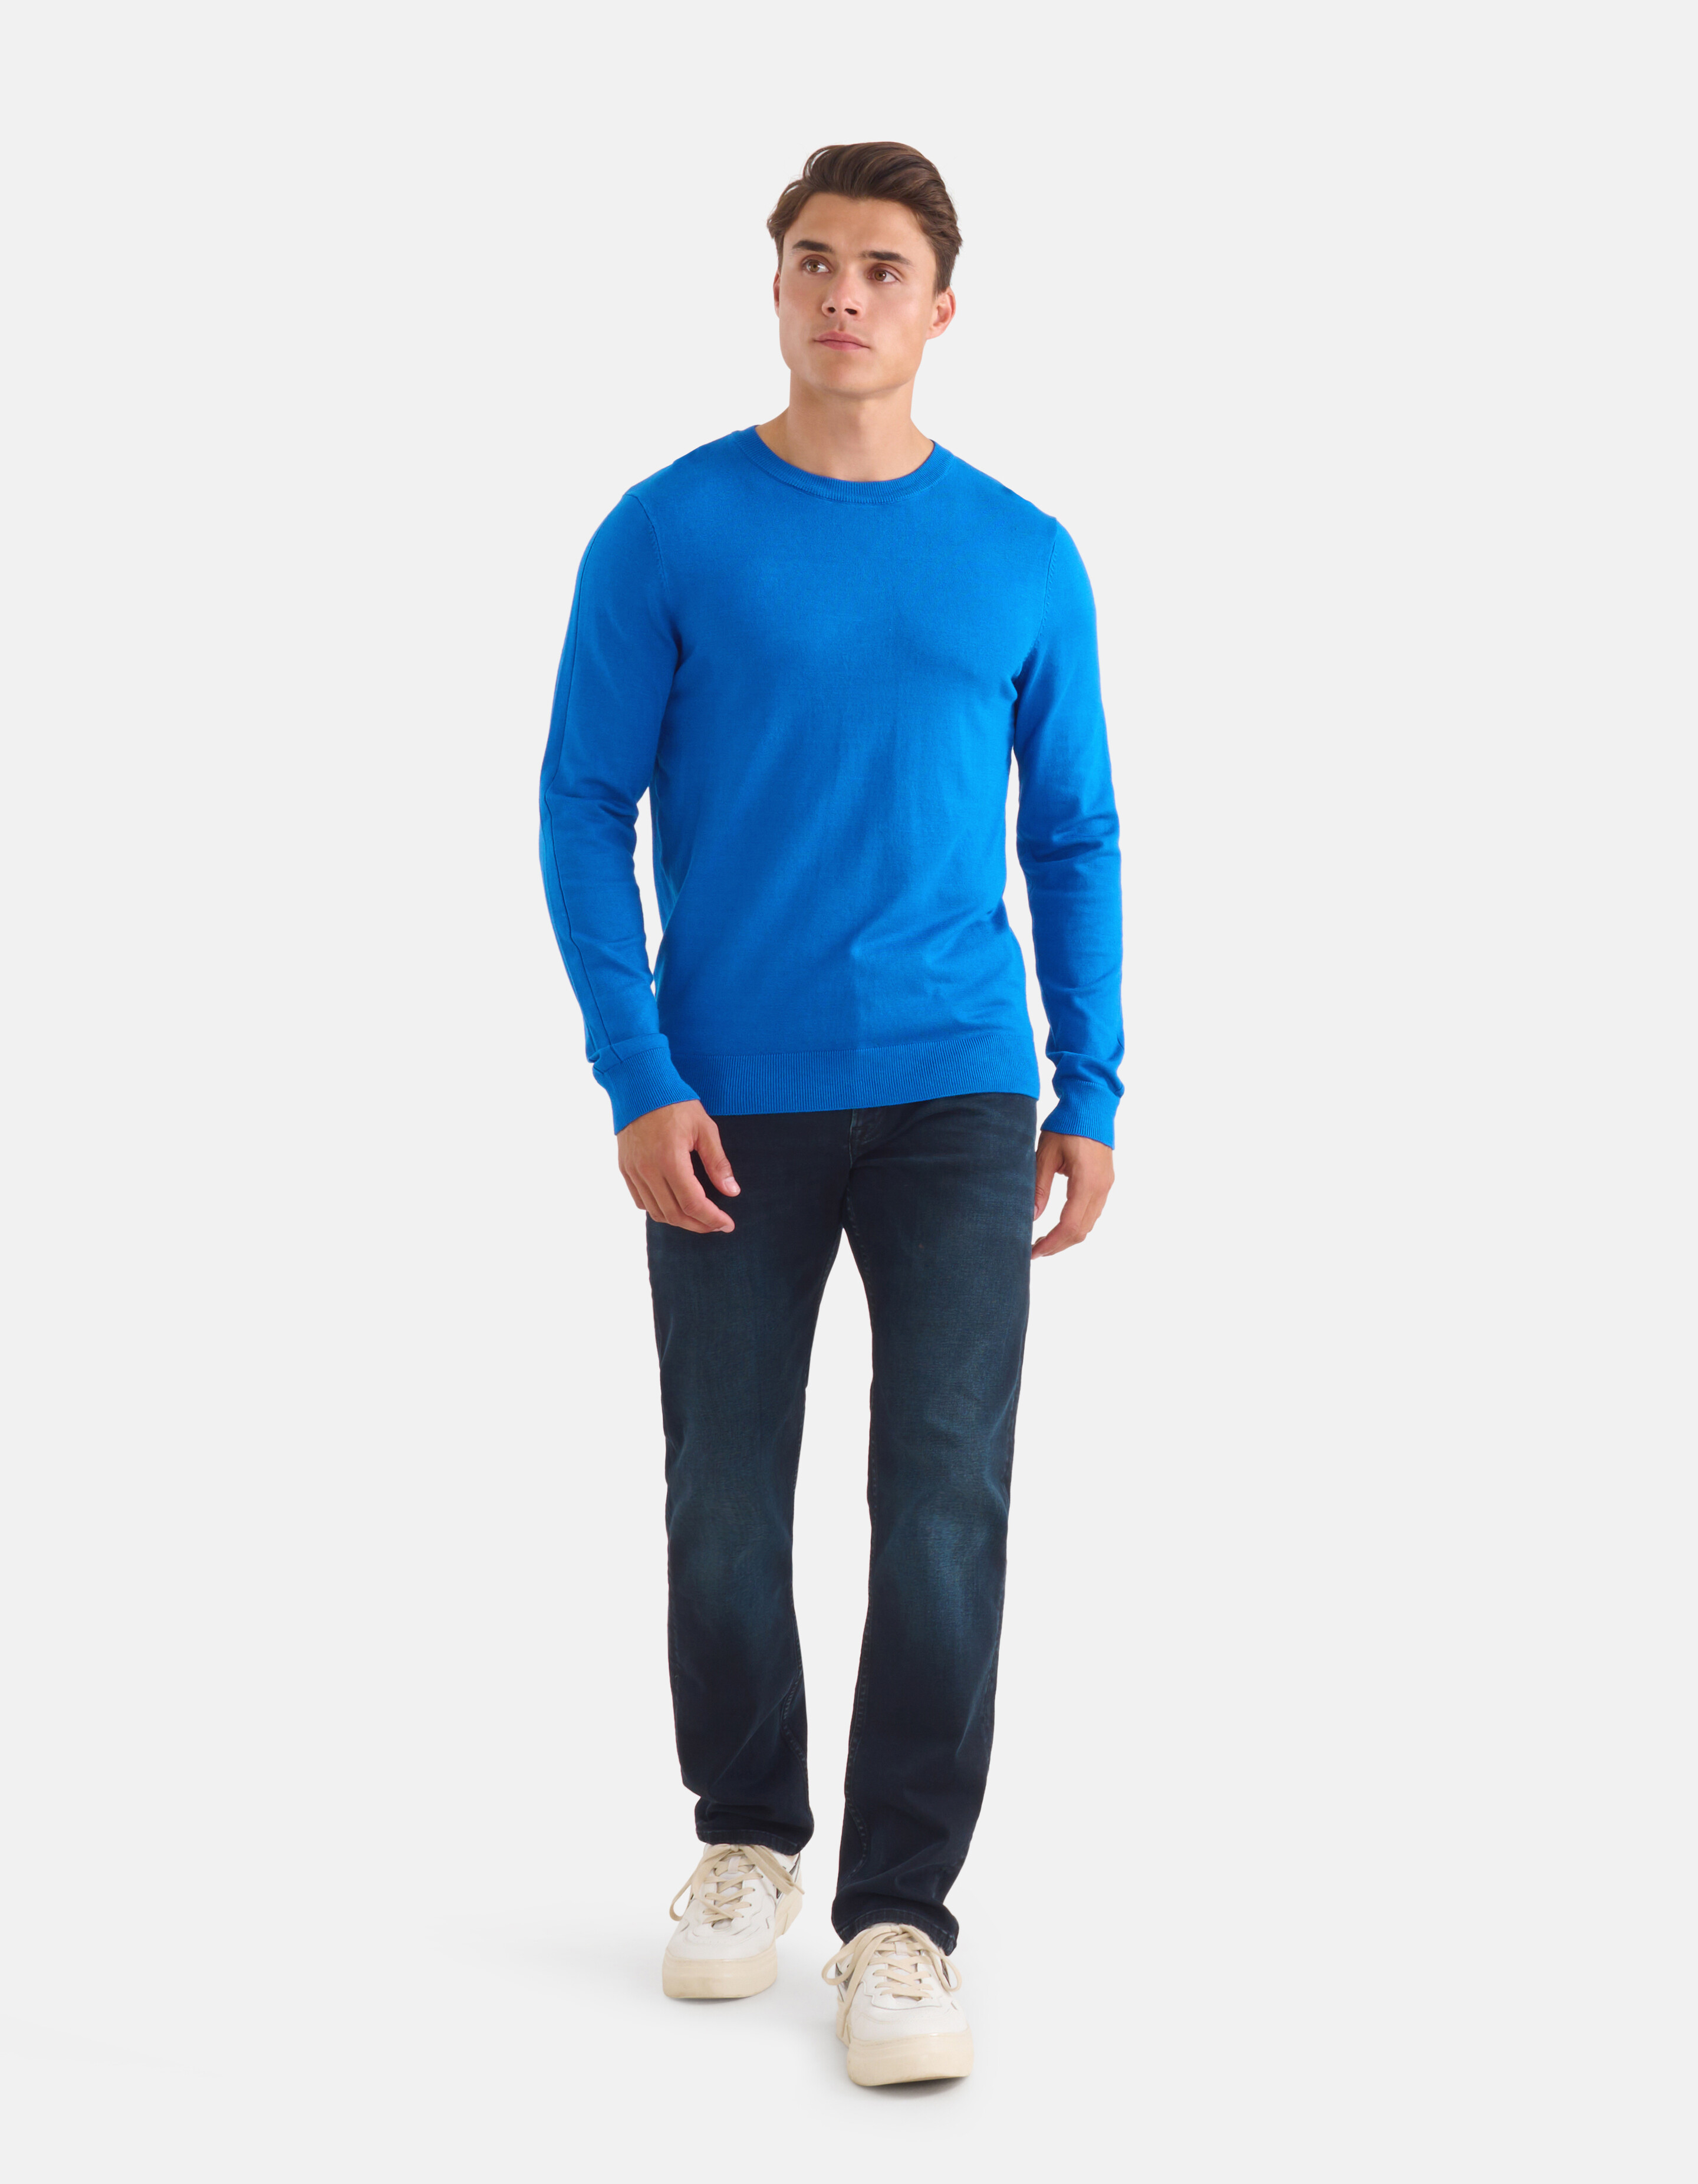 Straight Jeans Blauw/Zwart L36 Refill